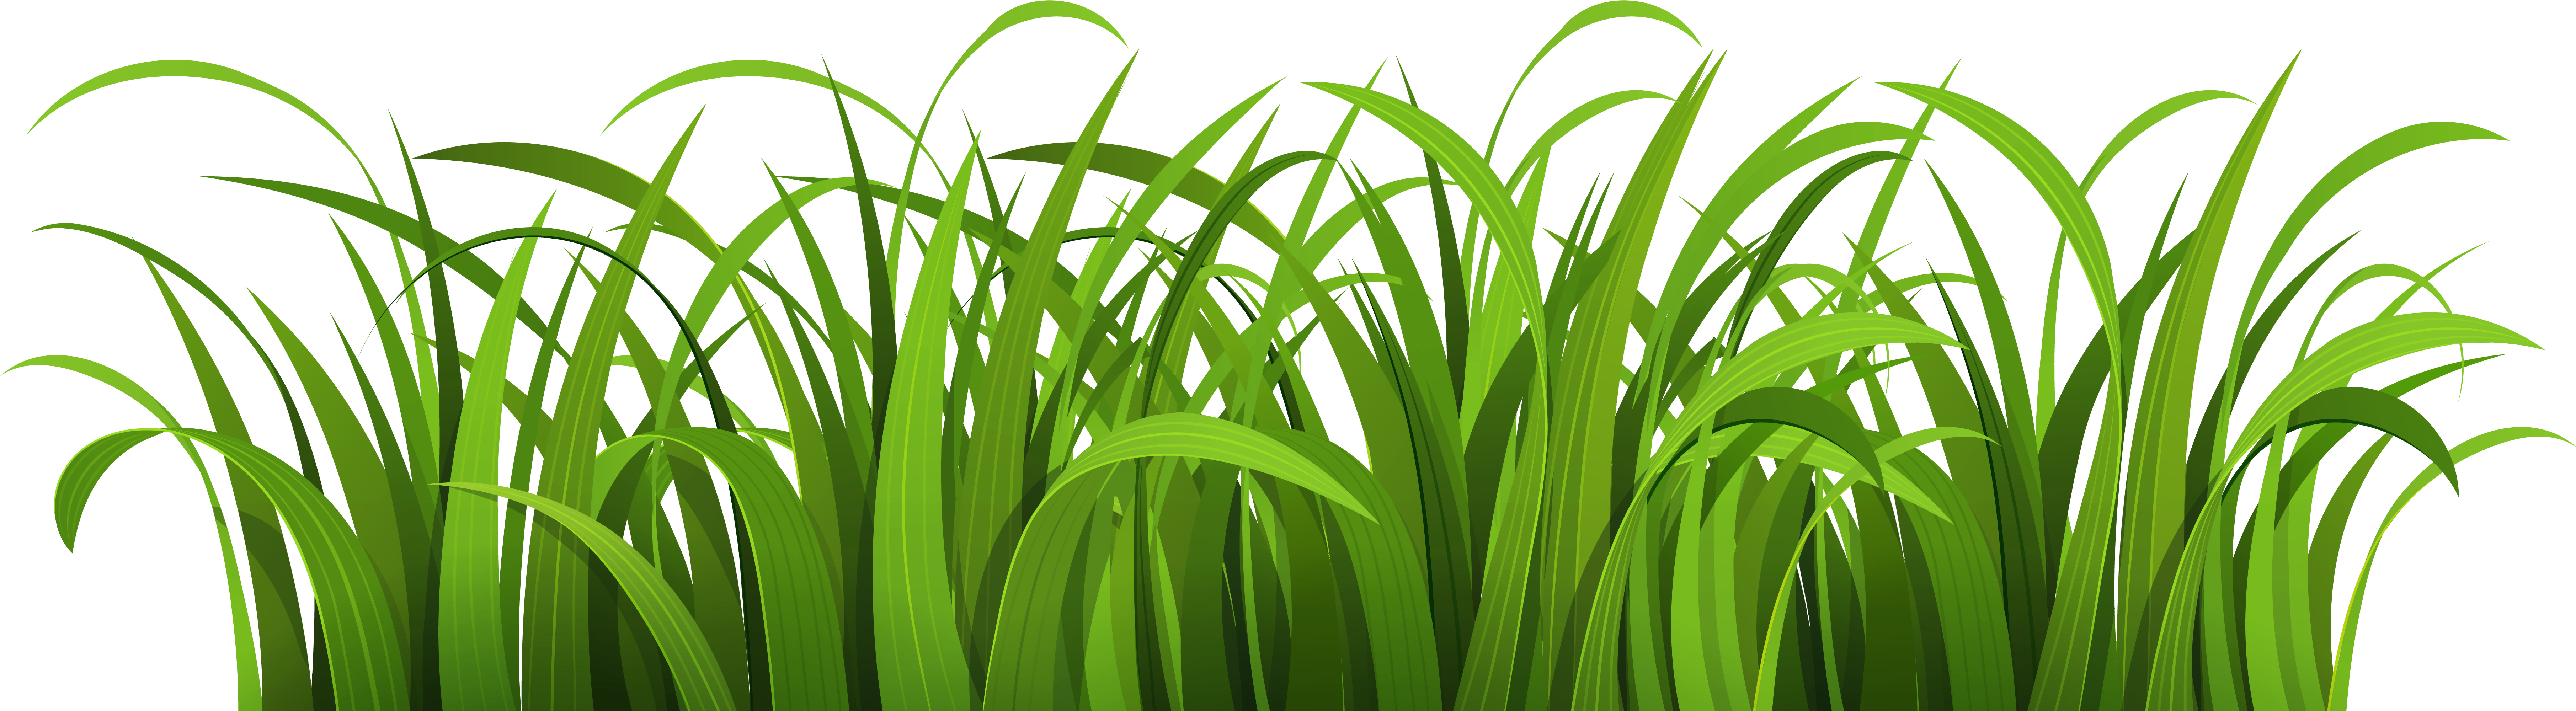 Grass - Green Grass Vector Png (7500x2250)